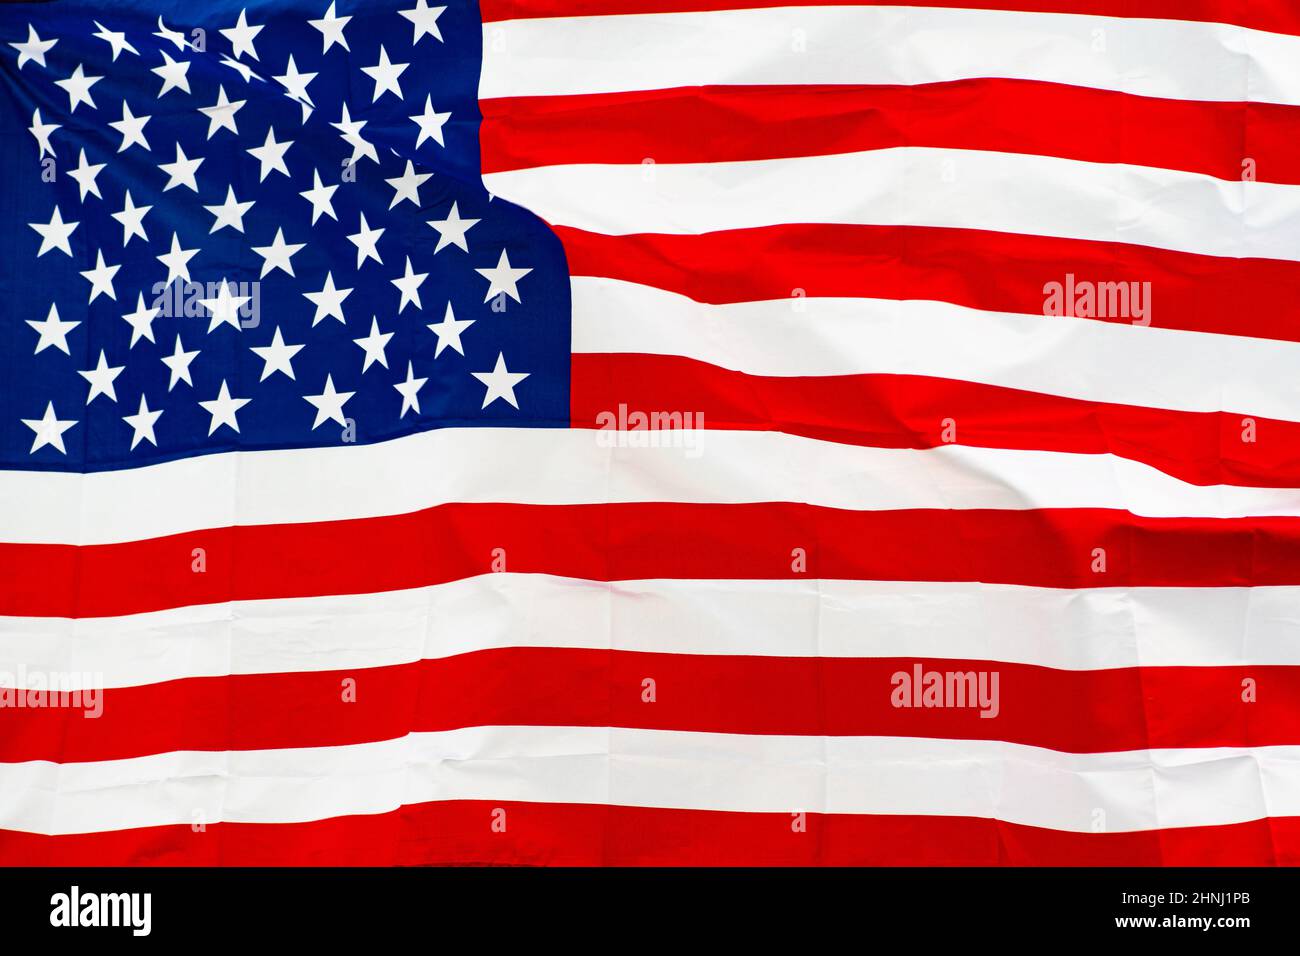 Etats-Unis, Etats-Unis, drapeau américain agitant dans la ville avec des bâtiments gouvernementaux sur fond Banque D'Images